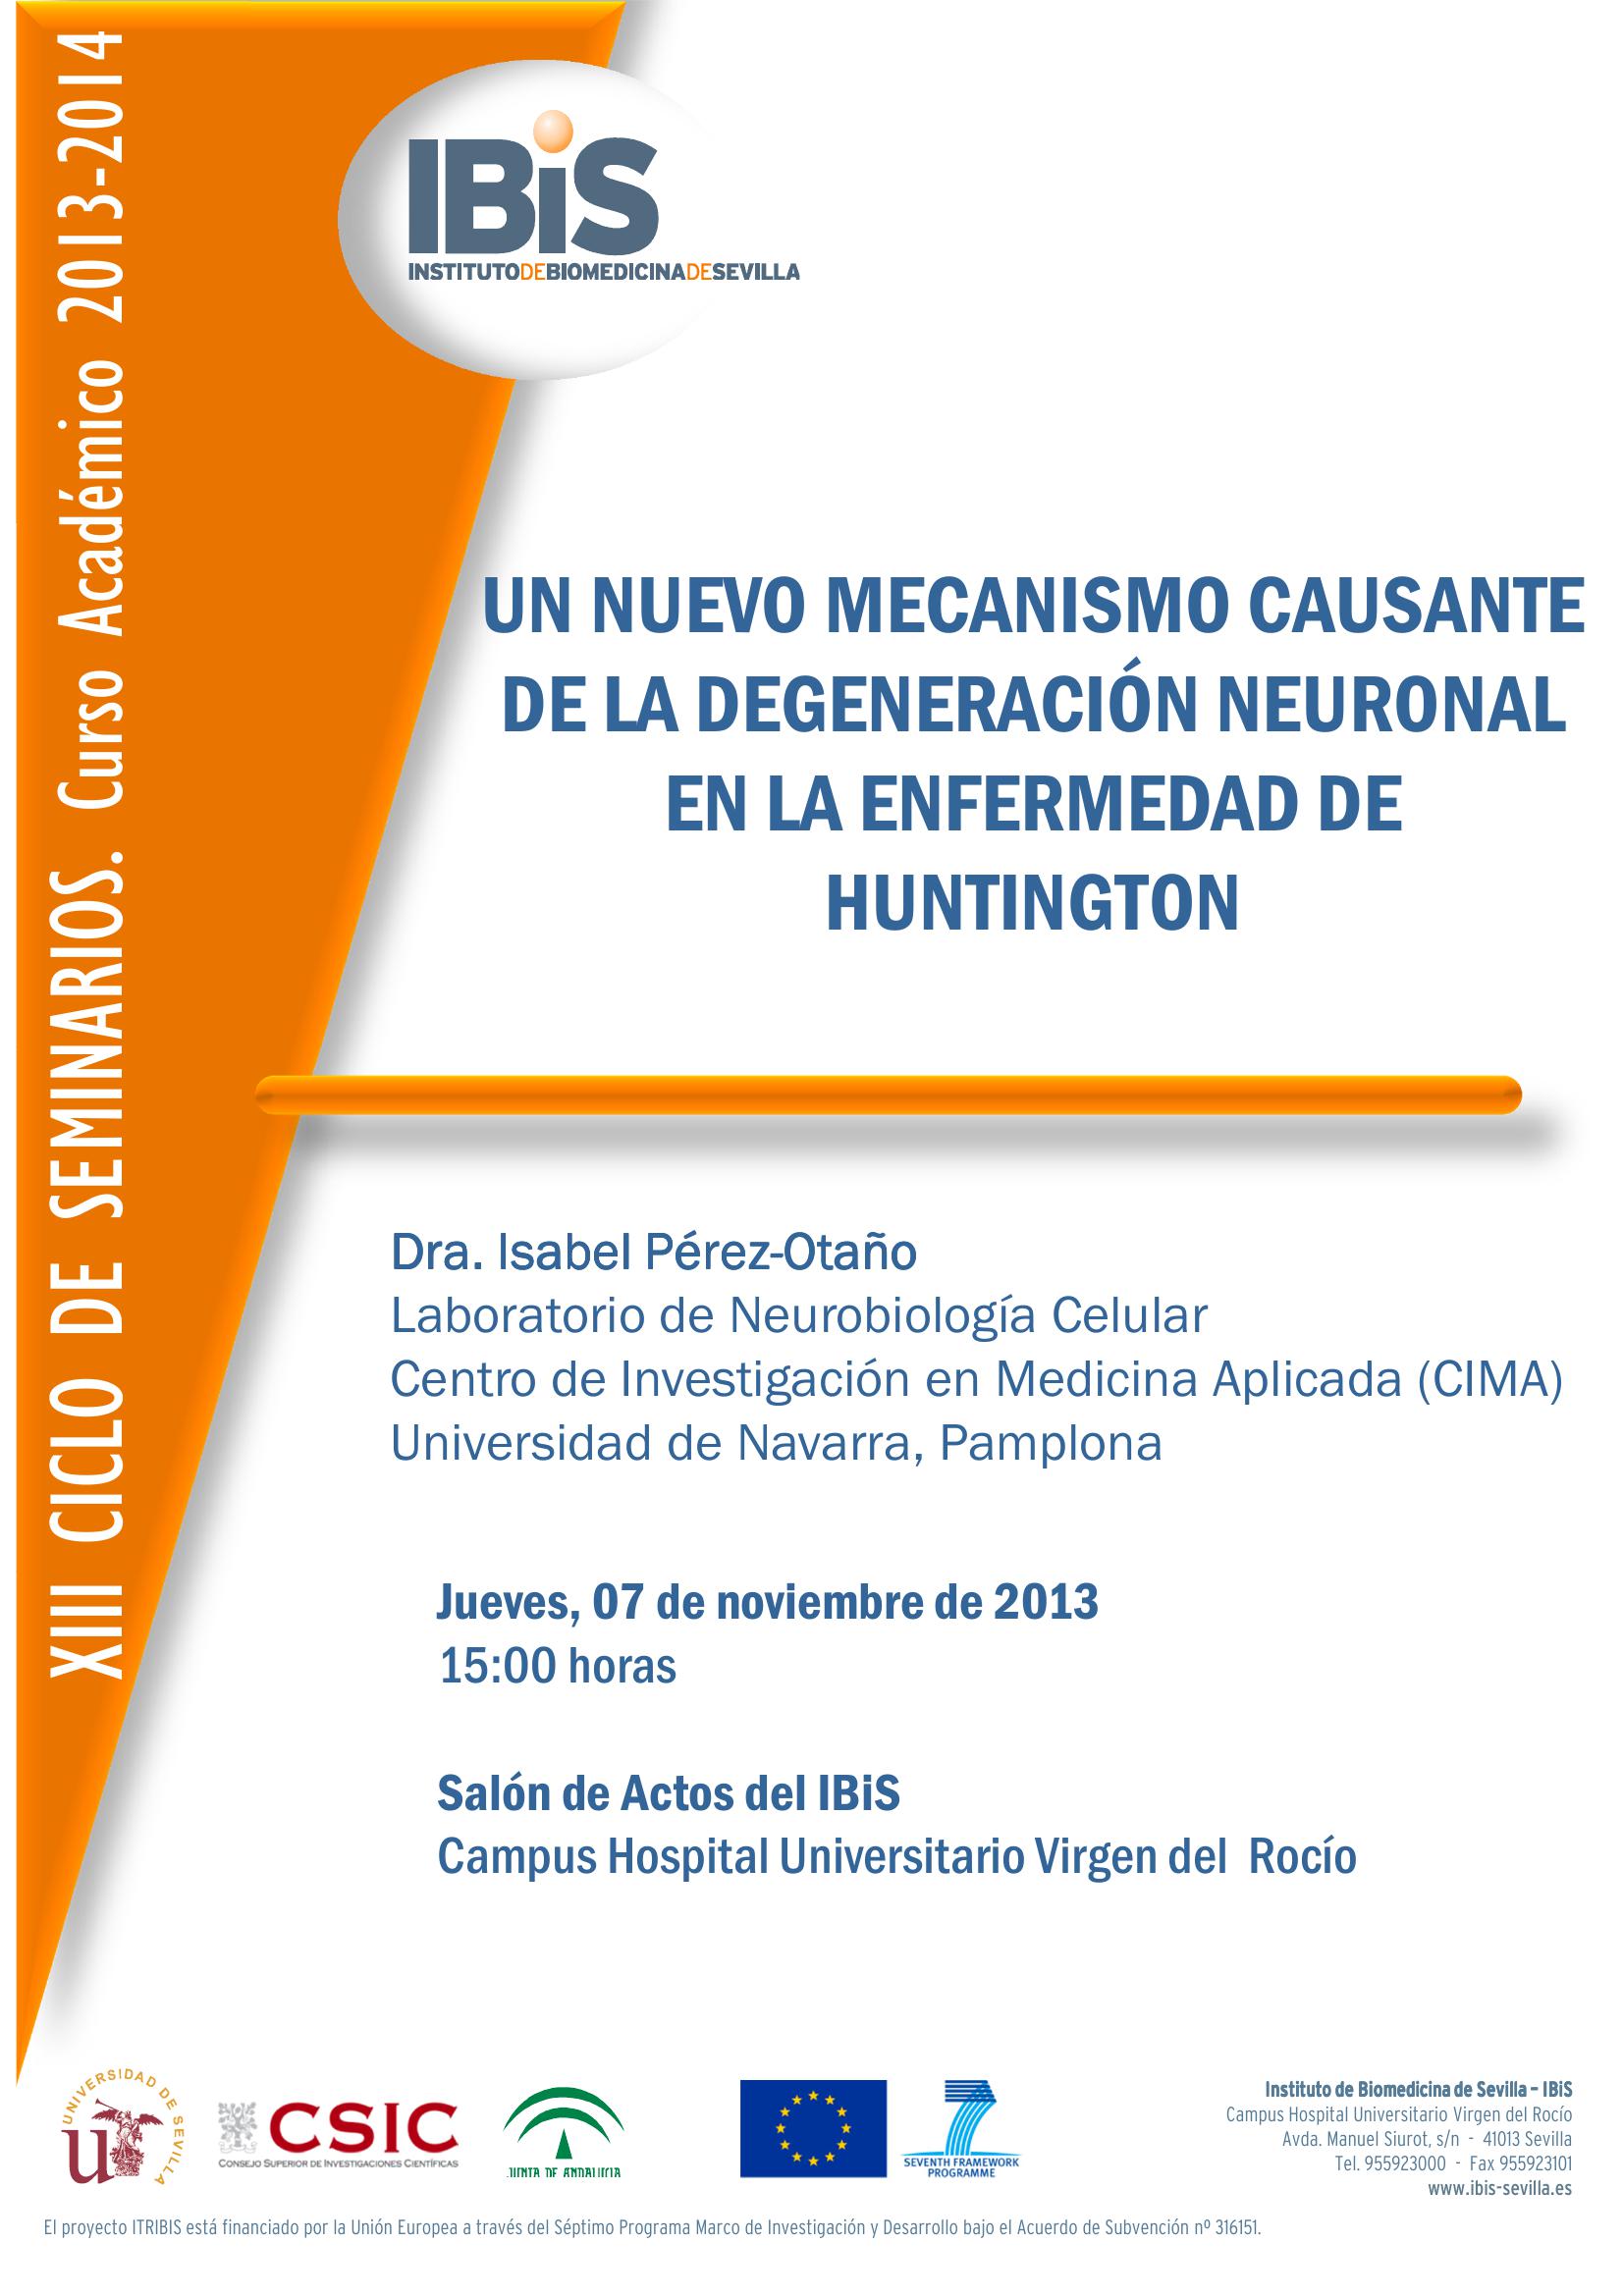 Poster: UN NUEVO MECANISMO CAUSANTE DE LA DEGENERACIÓN  NEURONAL EN LA ENFERMEDAD DE HUNTINGTON